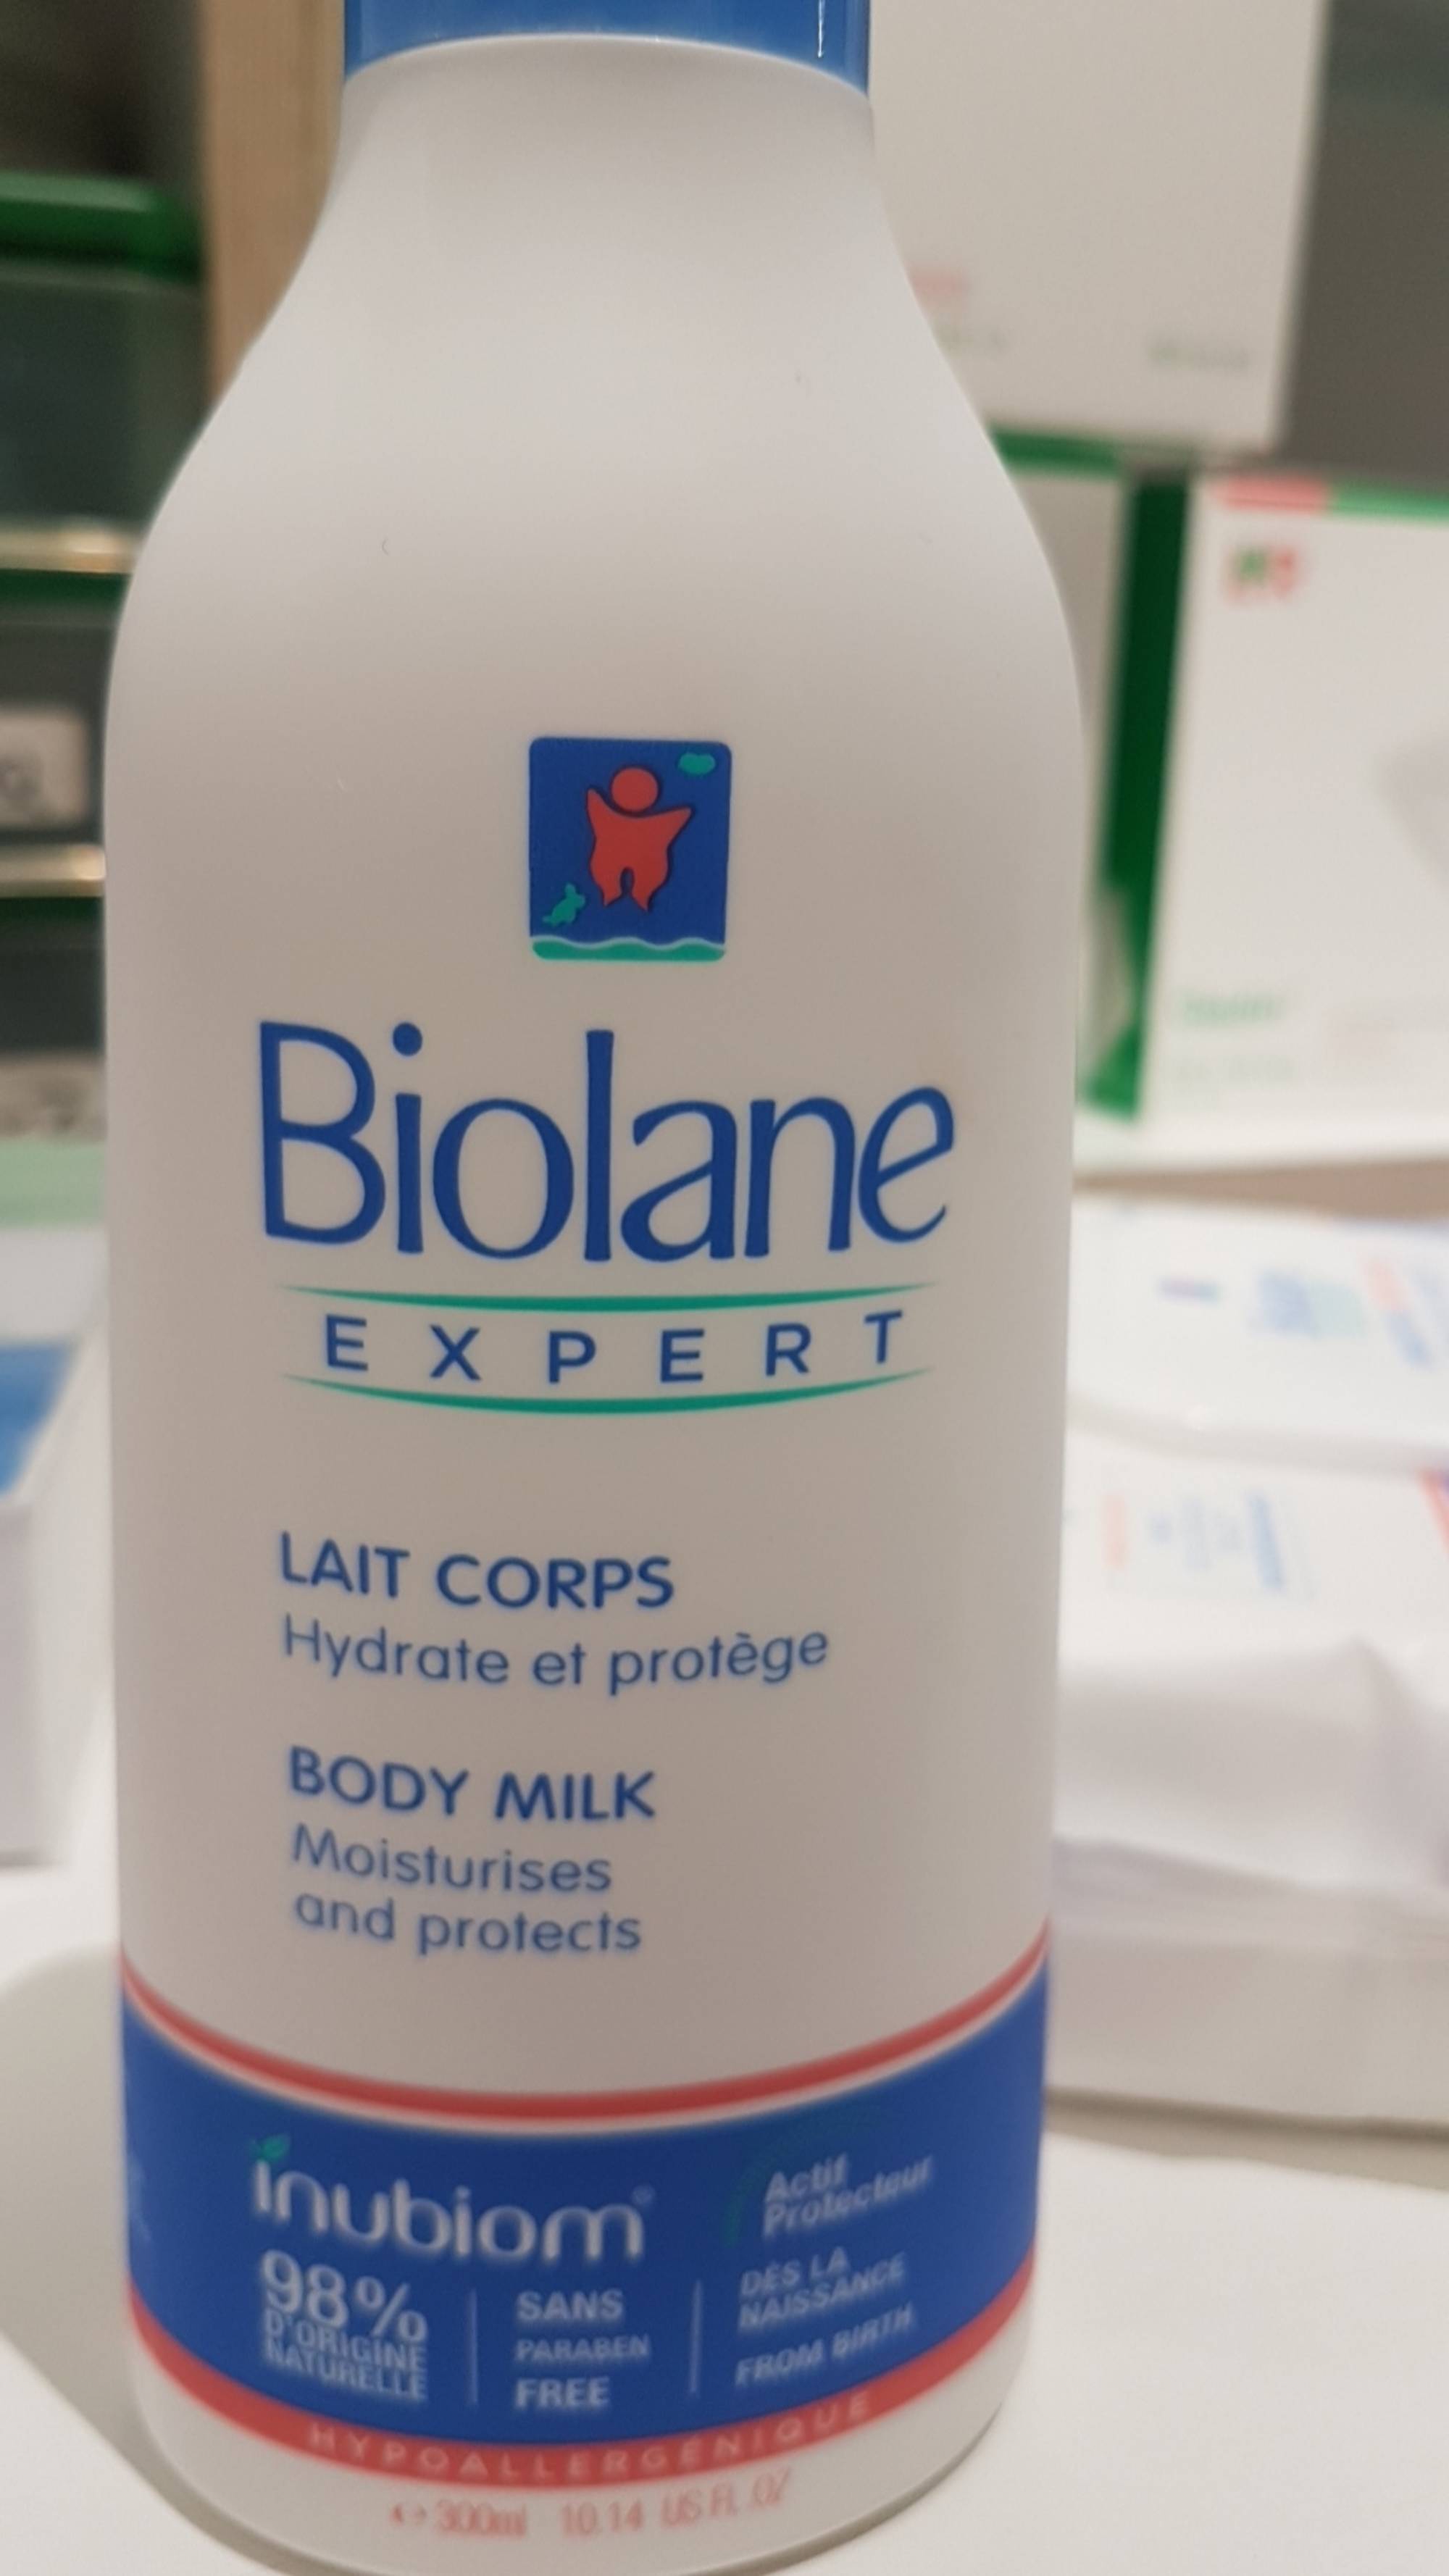 BIOLANE - Expert - Lait corps hydrate et protège